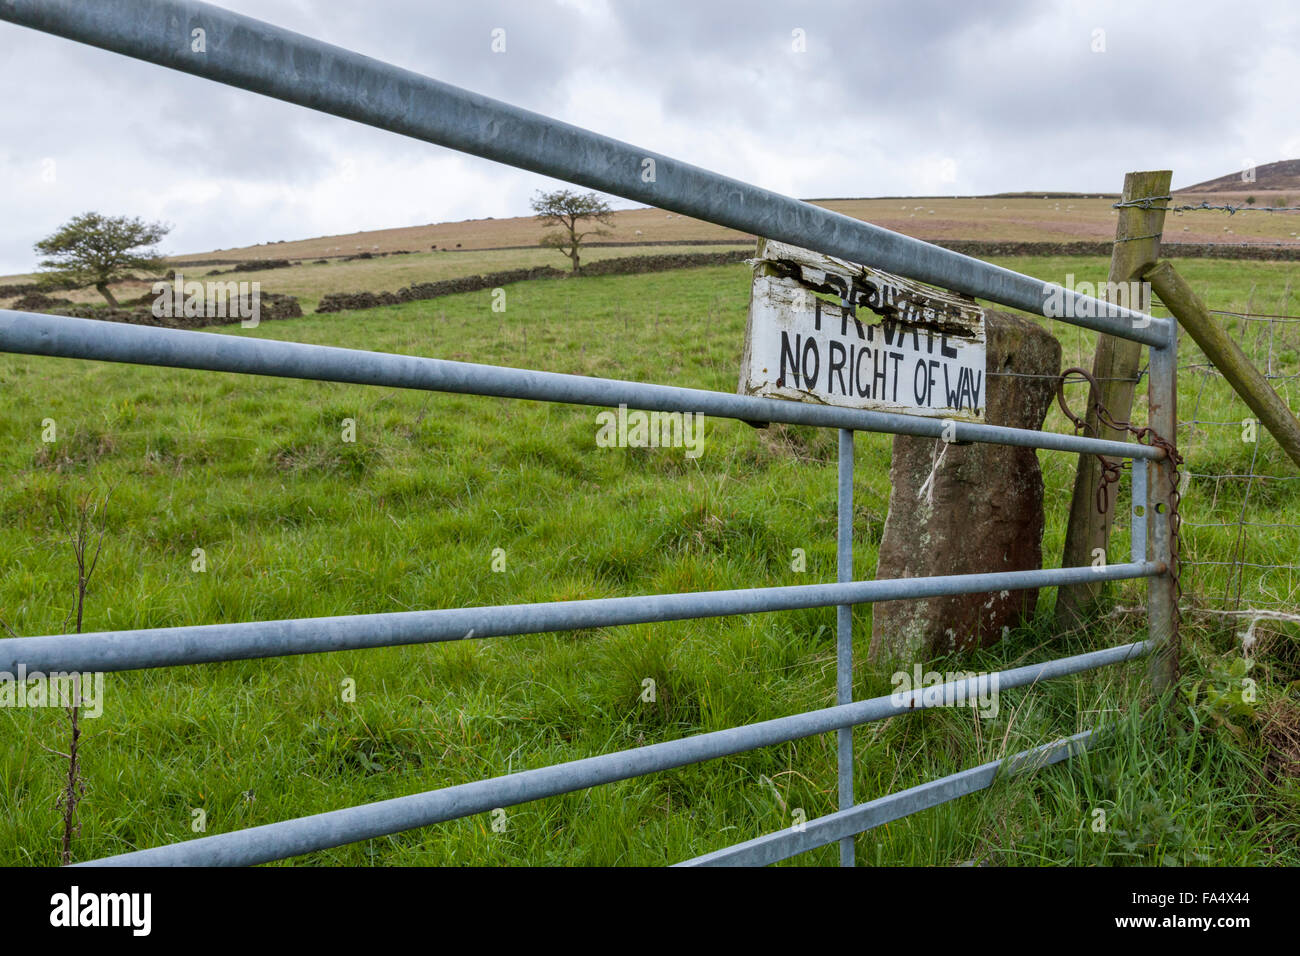 Tierras Privadas. Ningún derecho privado de manera firme en una granja, Derbyshire Peak District, Inglaterra, Reino Unido. Foto de stock